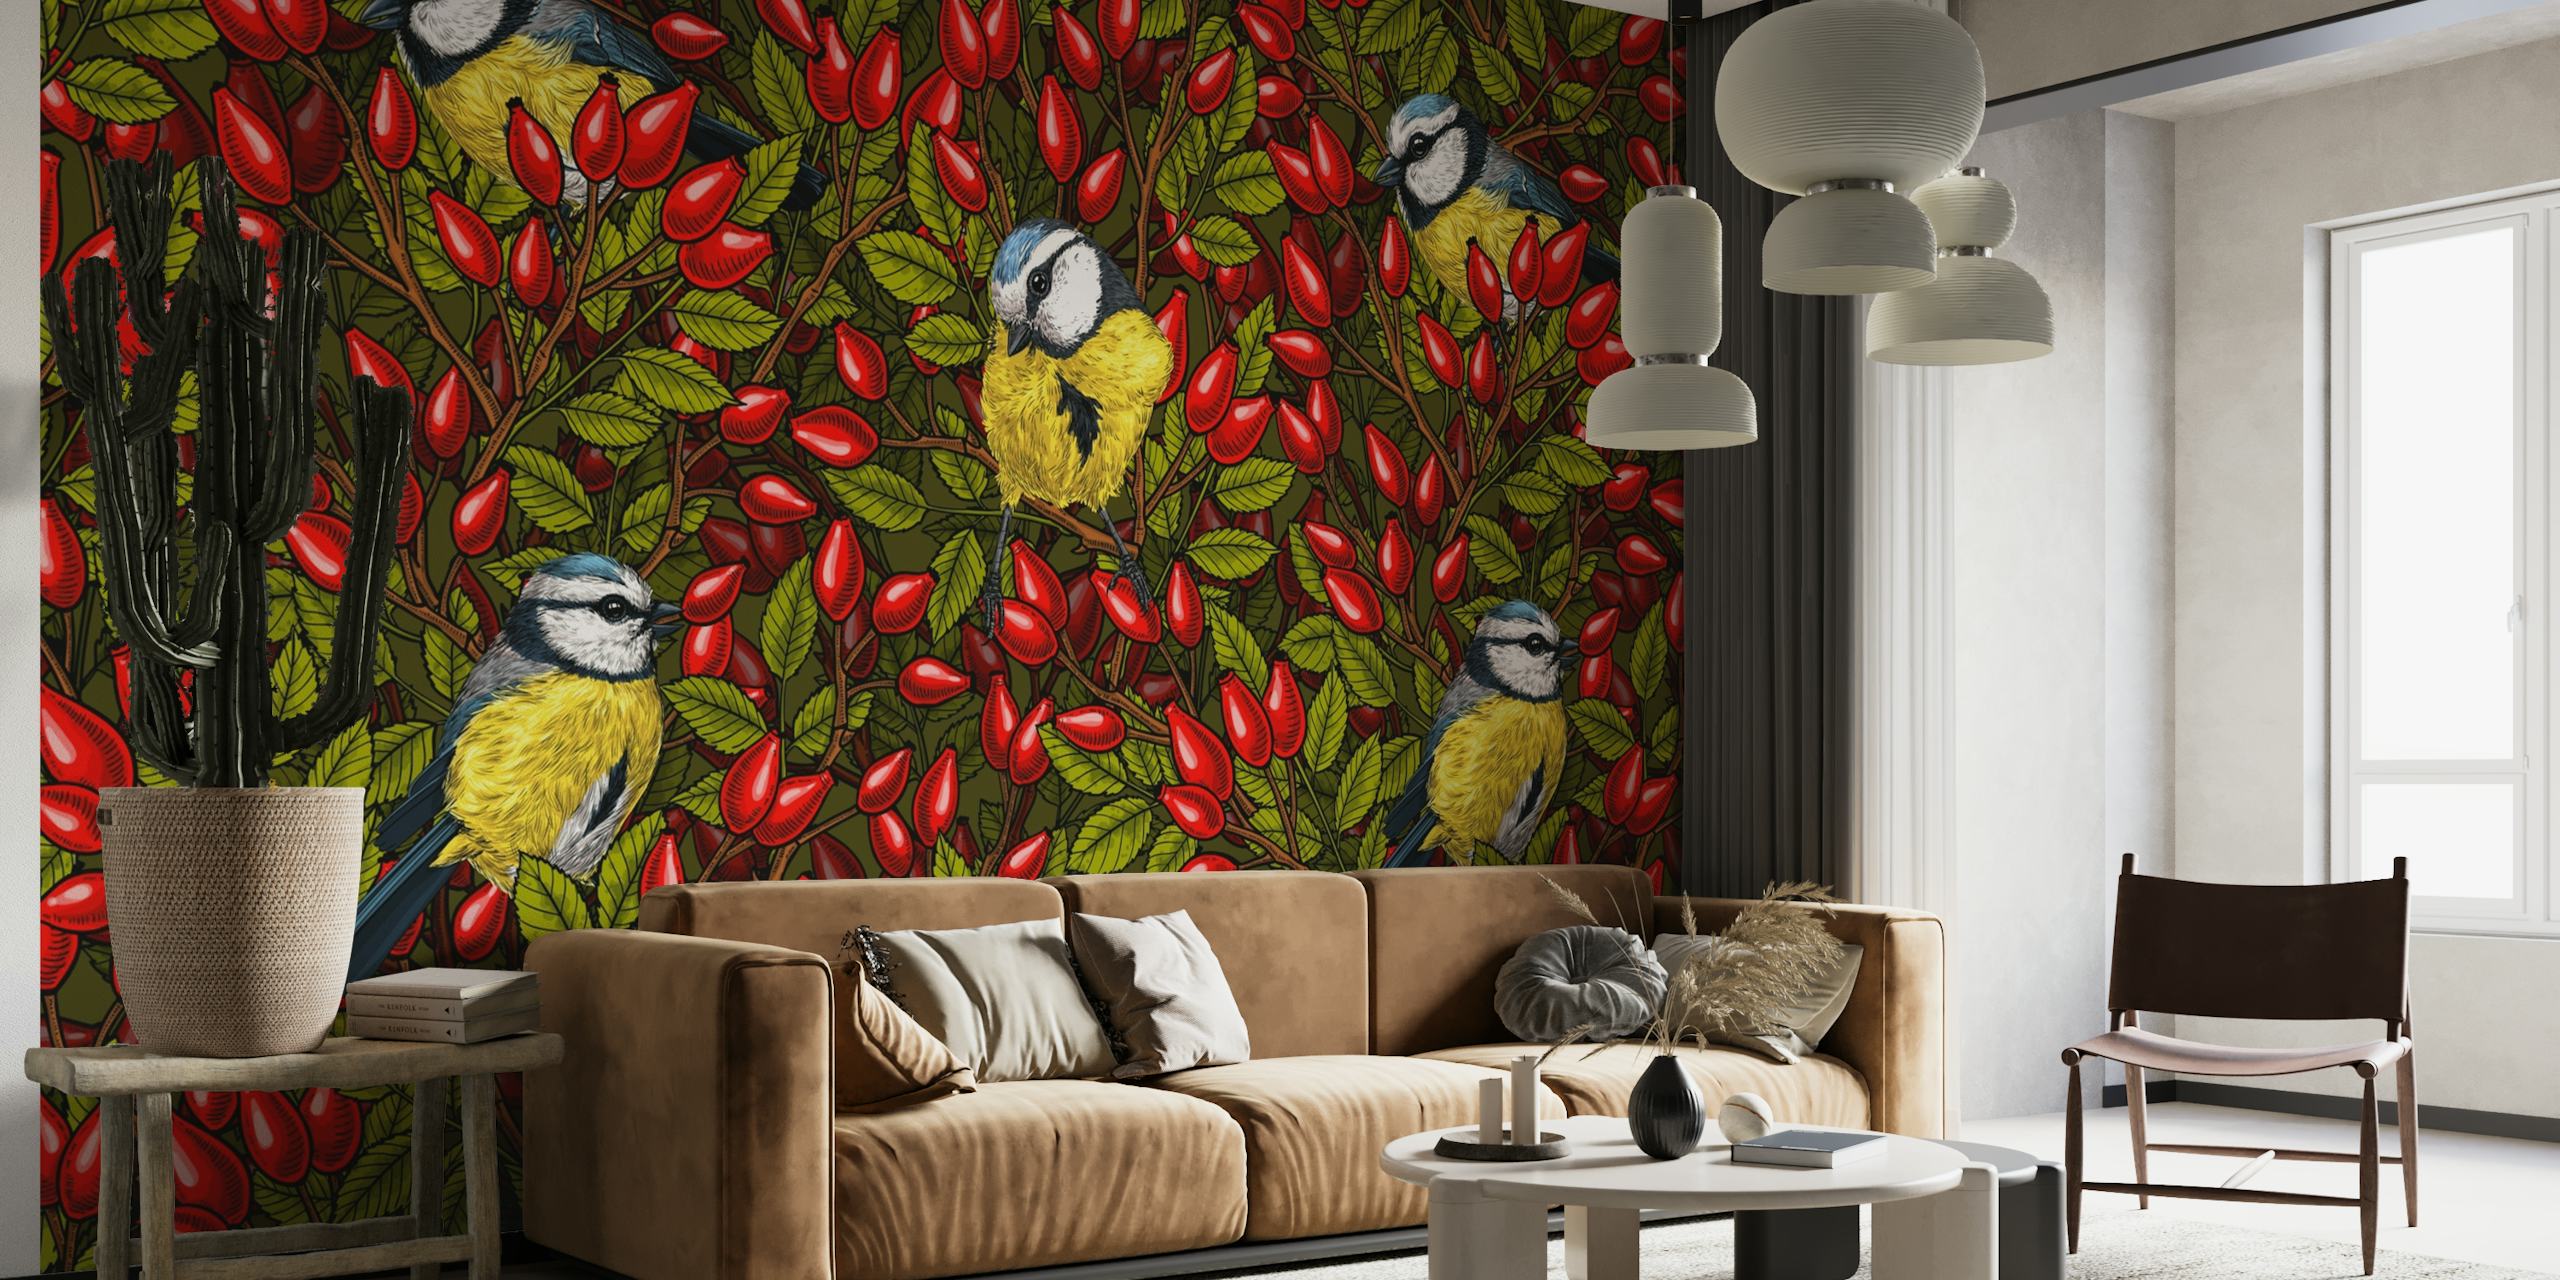 Kleurrijke vogels en rode hondenrozebottels muurschildering ontwerp